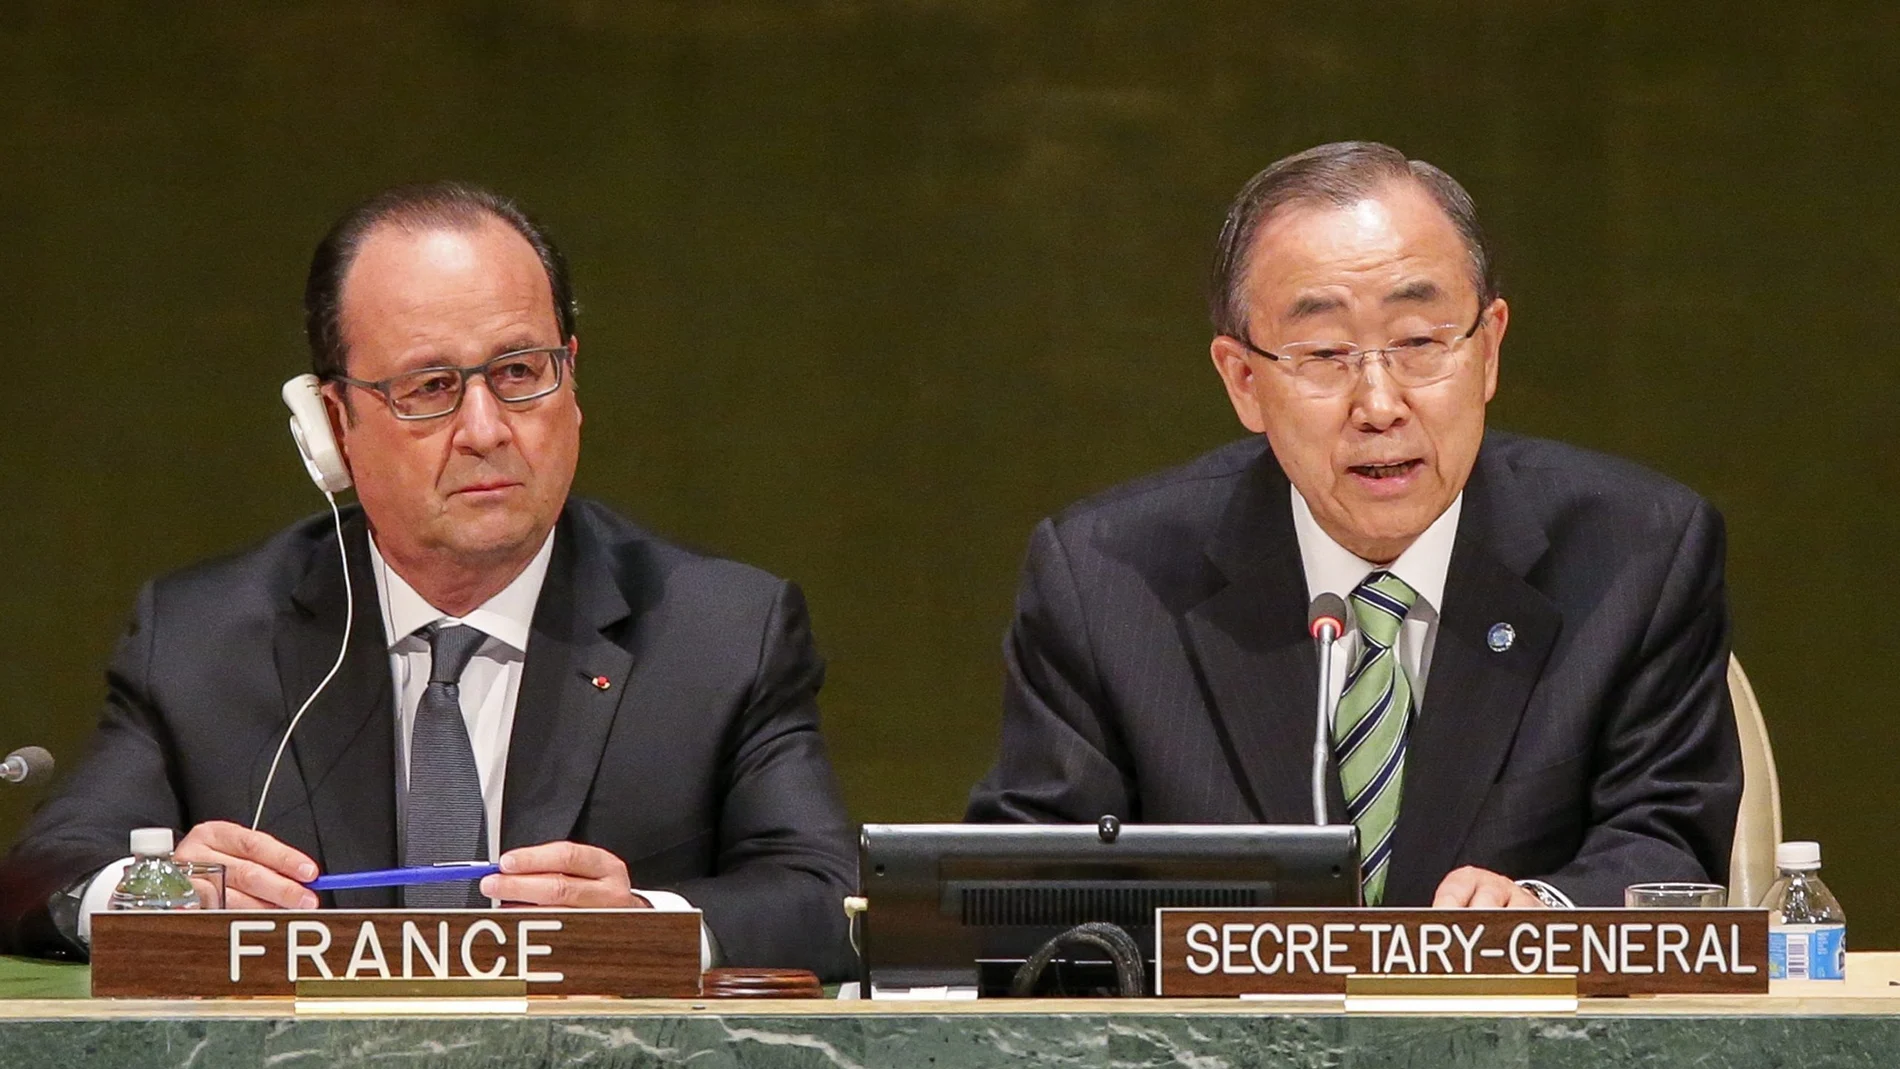 El presidente francés, François Hollande, y el secretario general de la ONU, Ban Ki-moon, durante la ceremonia 